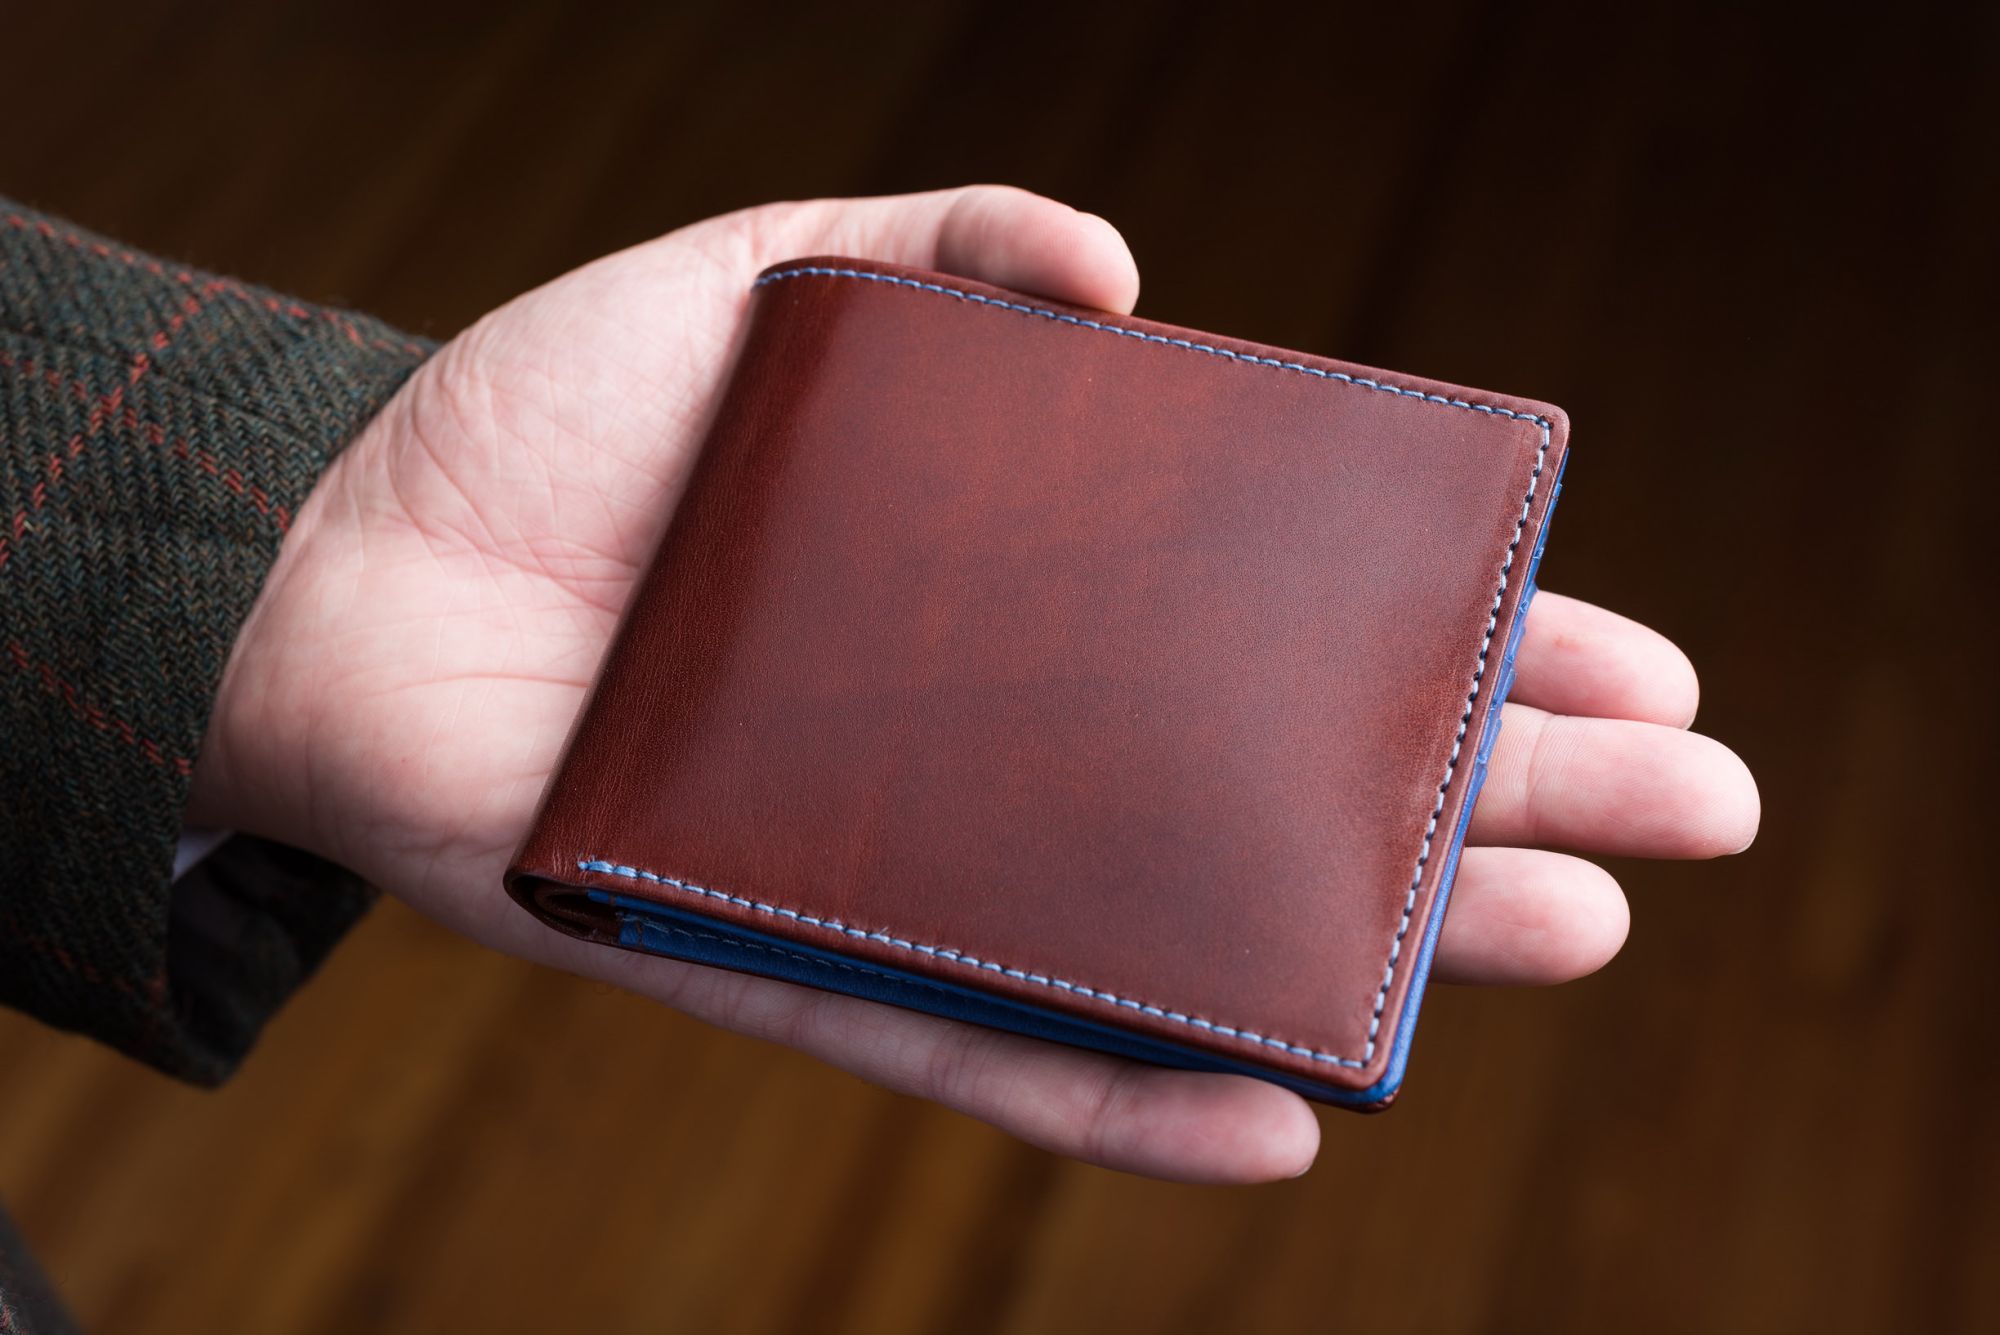 Men's Luxury Wallet